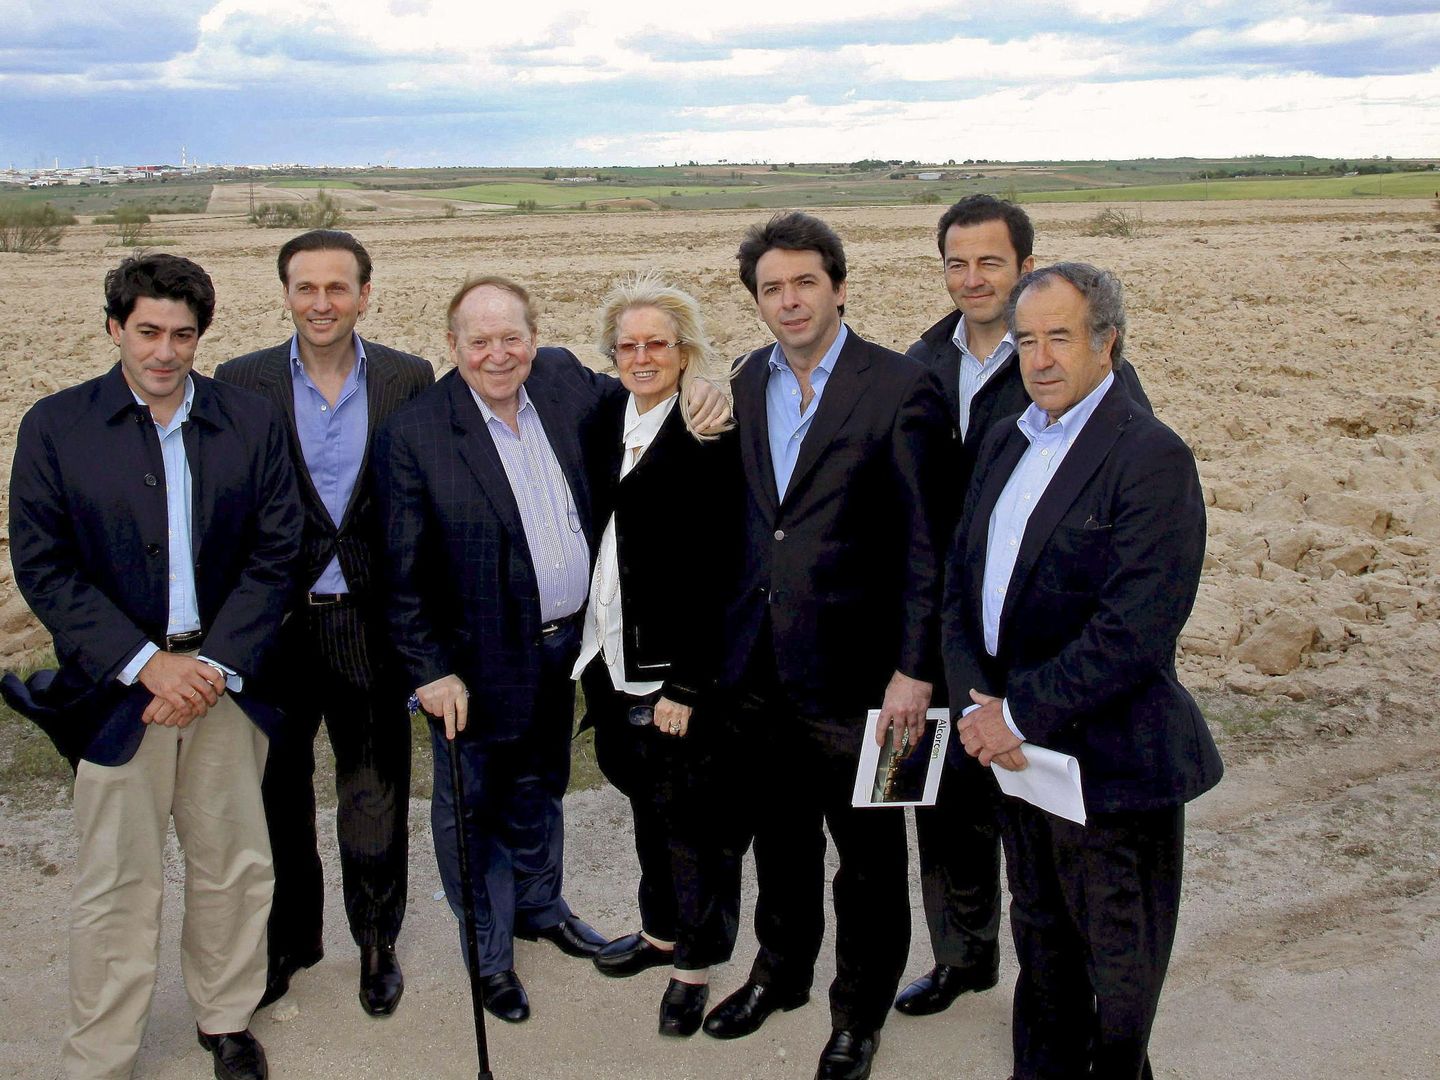 El inversor norteamericano Sheldon Adelson (3i), propietario de la empresa Las Vegas Sands y promotor del complejo de ocio y casino Eurovegas, cuando visitó los terrenos. (EFE archivo)